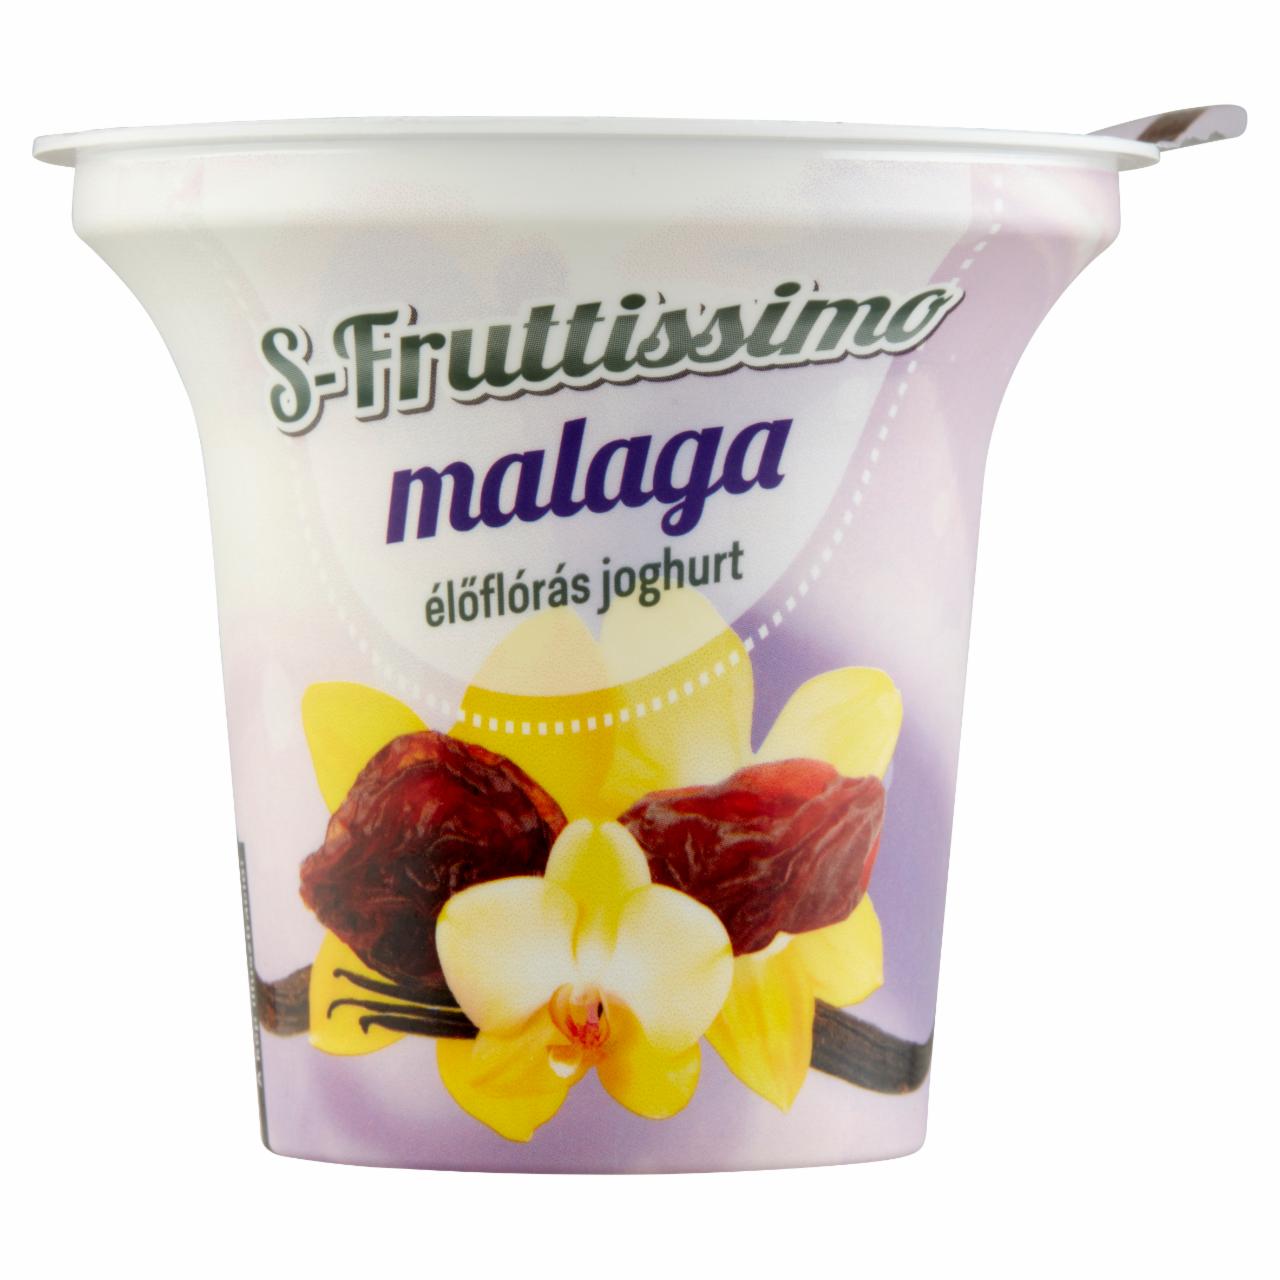 Képek - S-Fruttissimo Malaga élőflórás joghurt 200 g